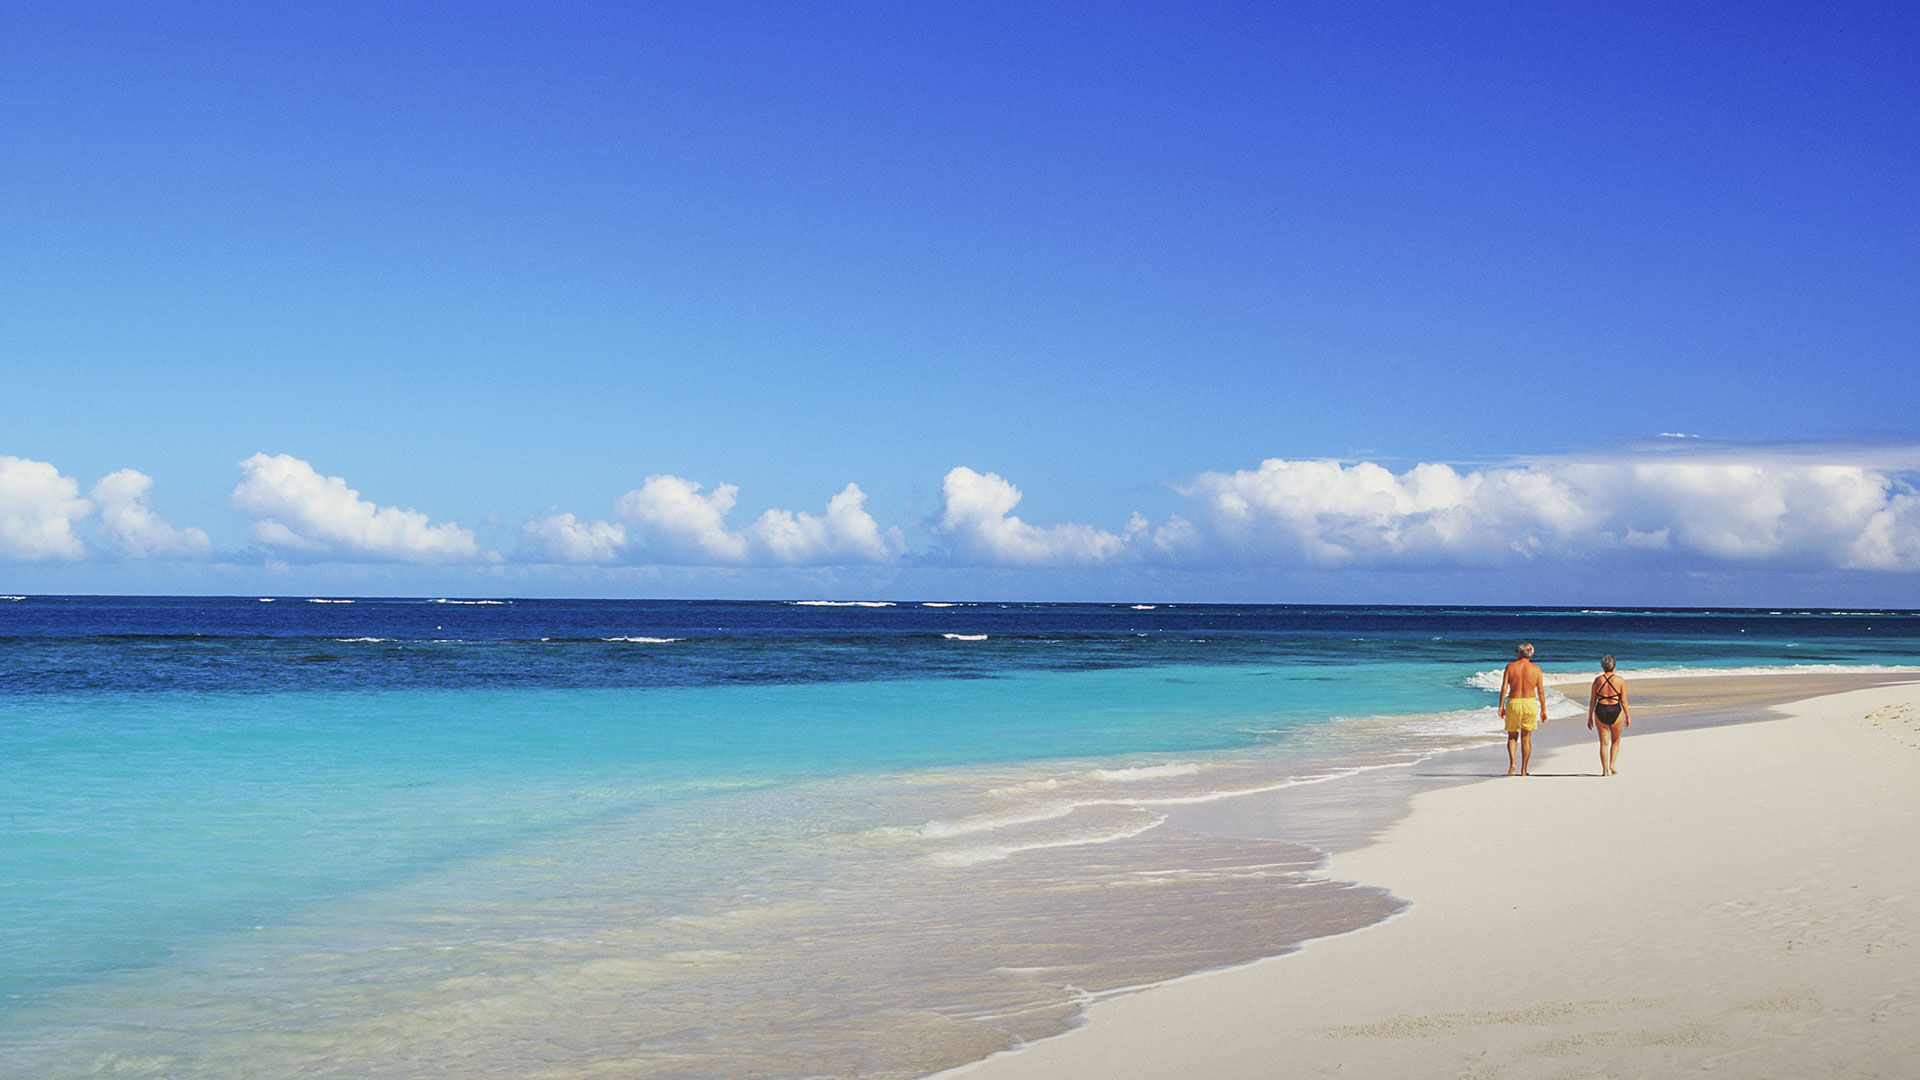 Aguas turquesa y arena blanca en las playas de Cancún